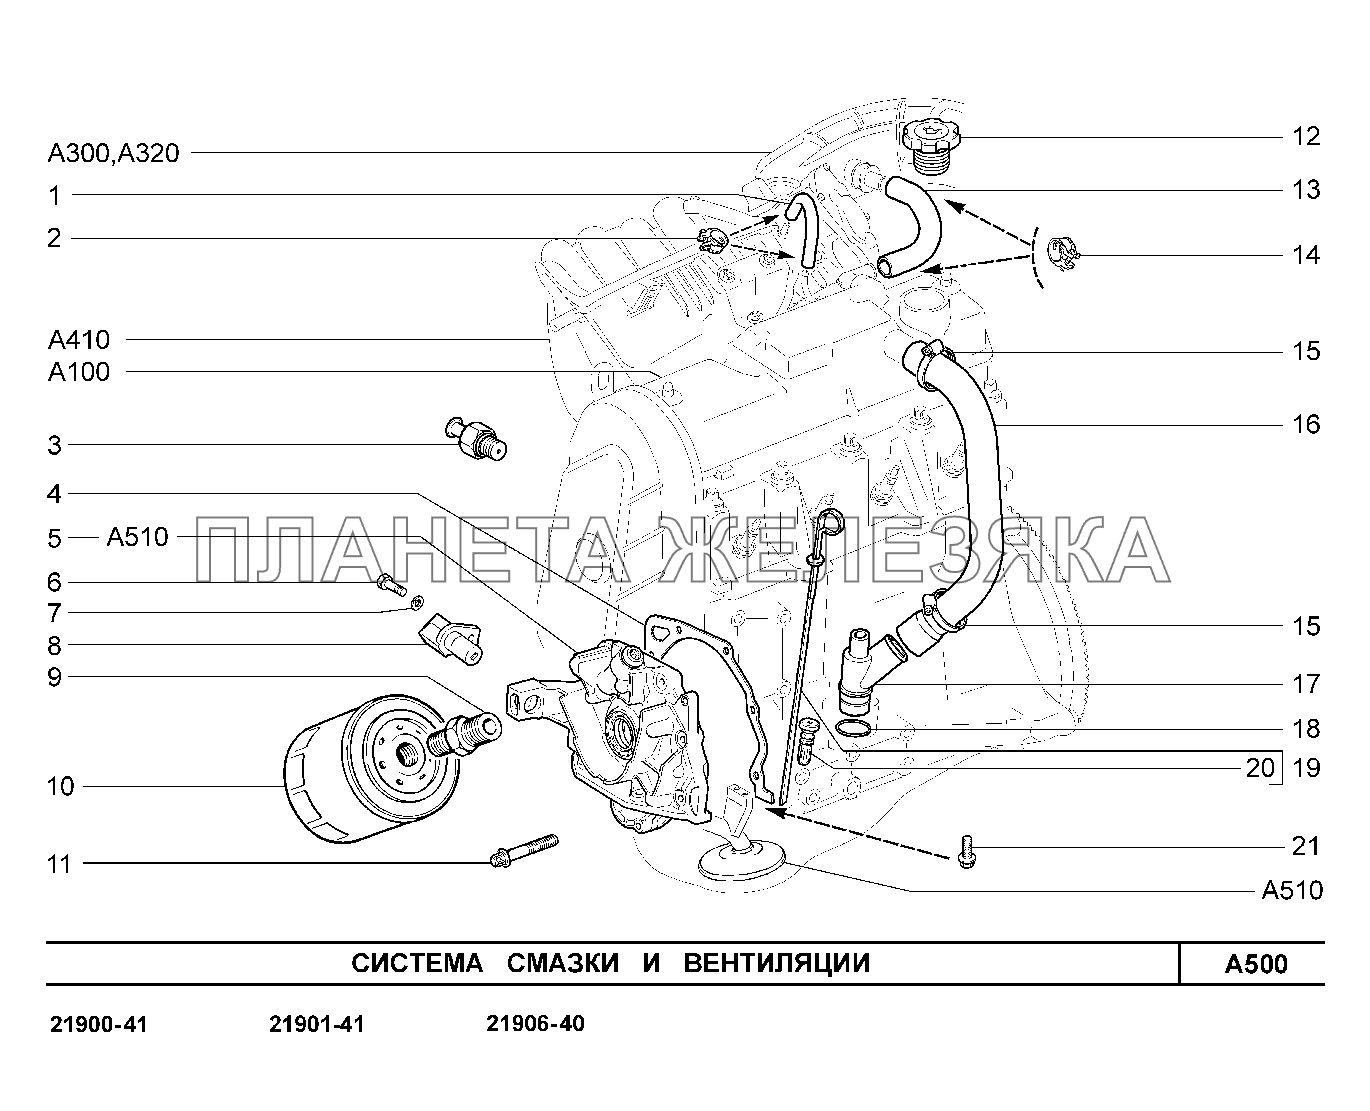 A500. Система смазки и вентиляции Lada Granta-2190